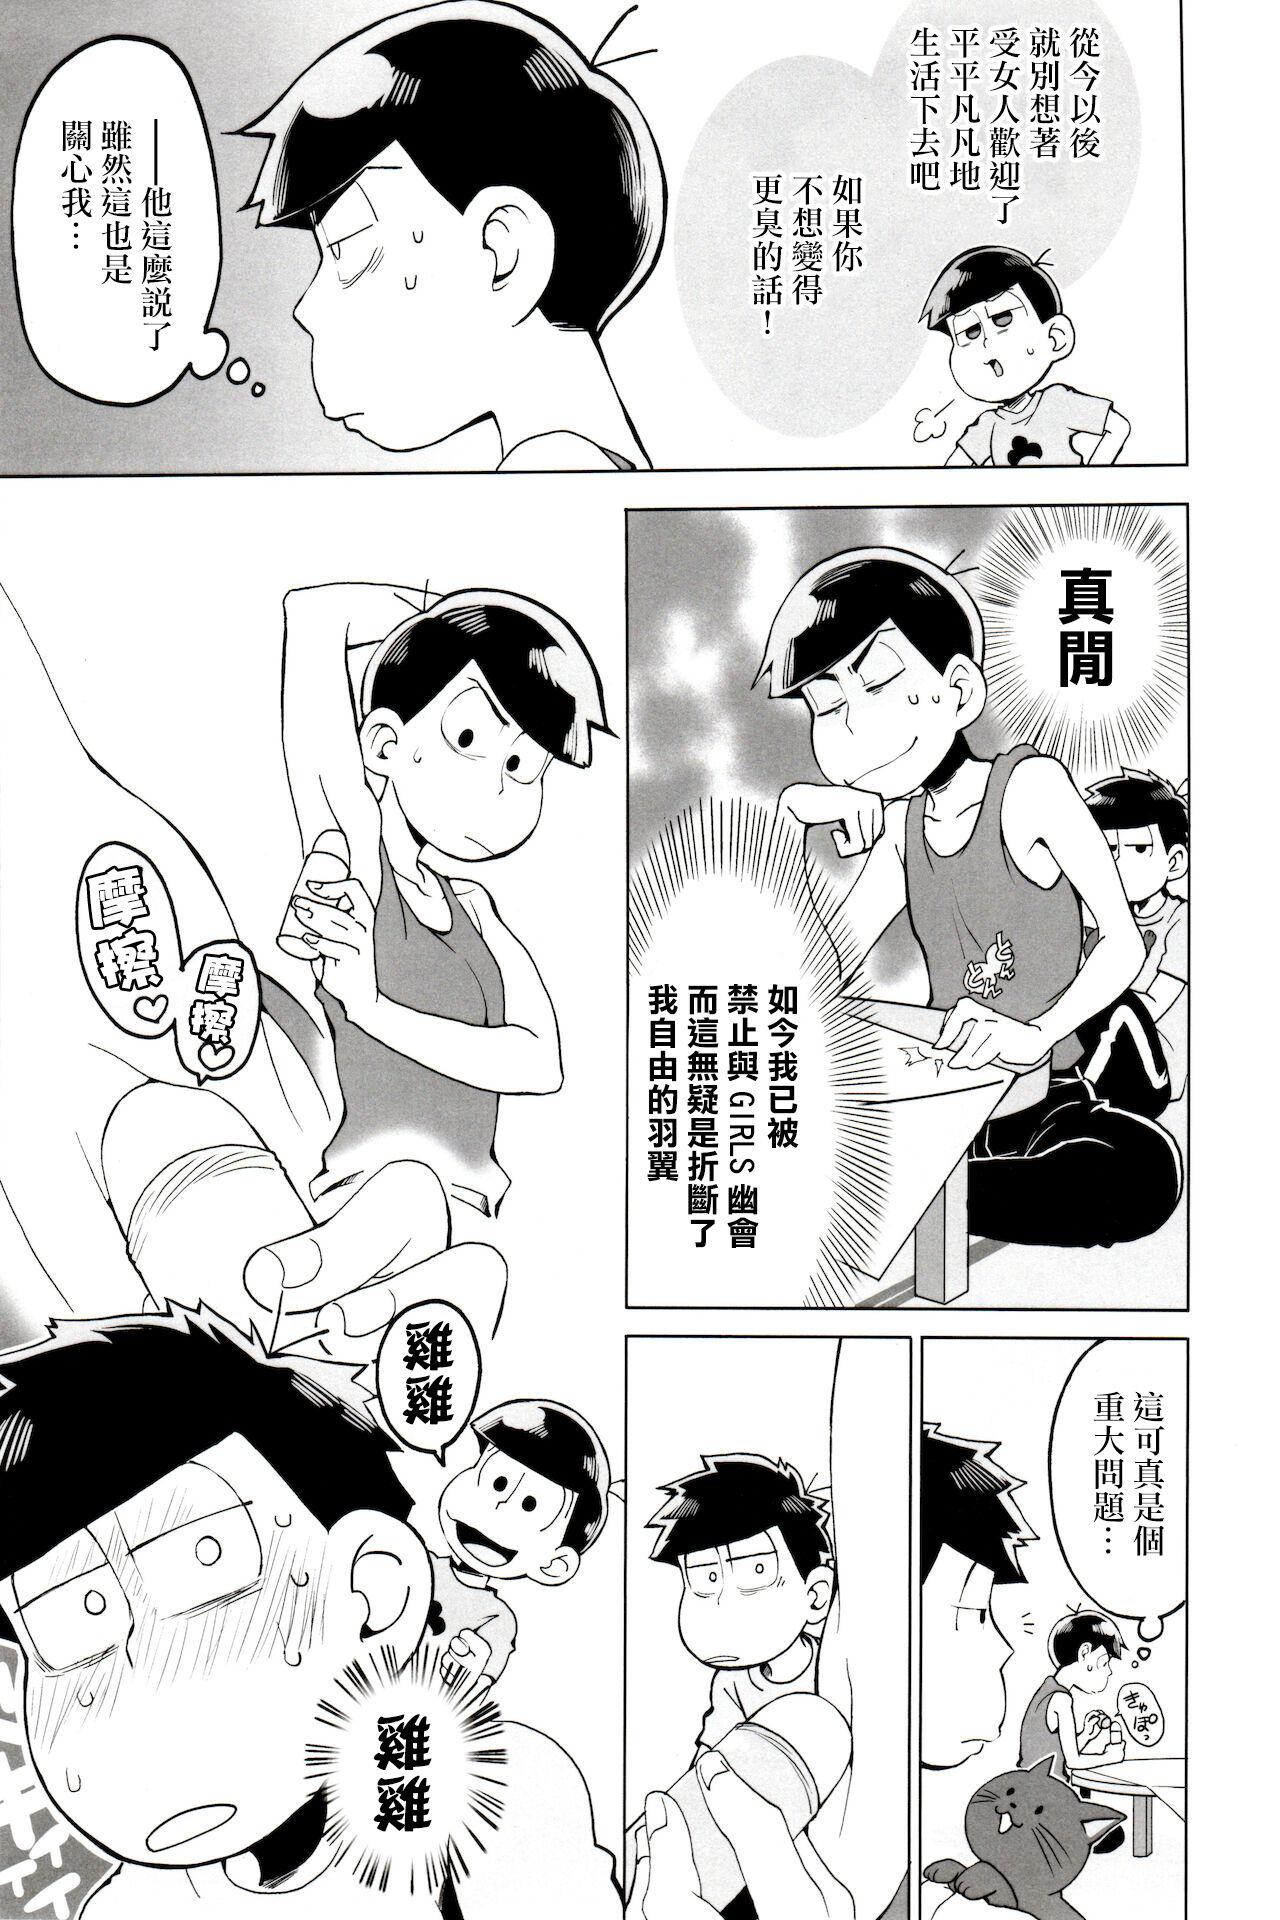 Rebolando Matsu Shiru Deodorant | 松汁止汗除臭劑 - Osomatsu san Massage Sex - Page 7